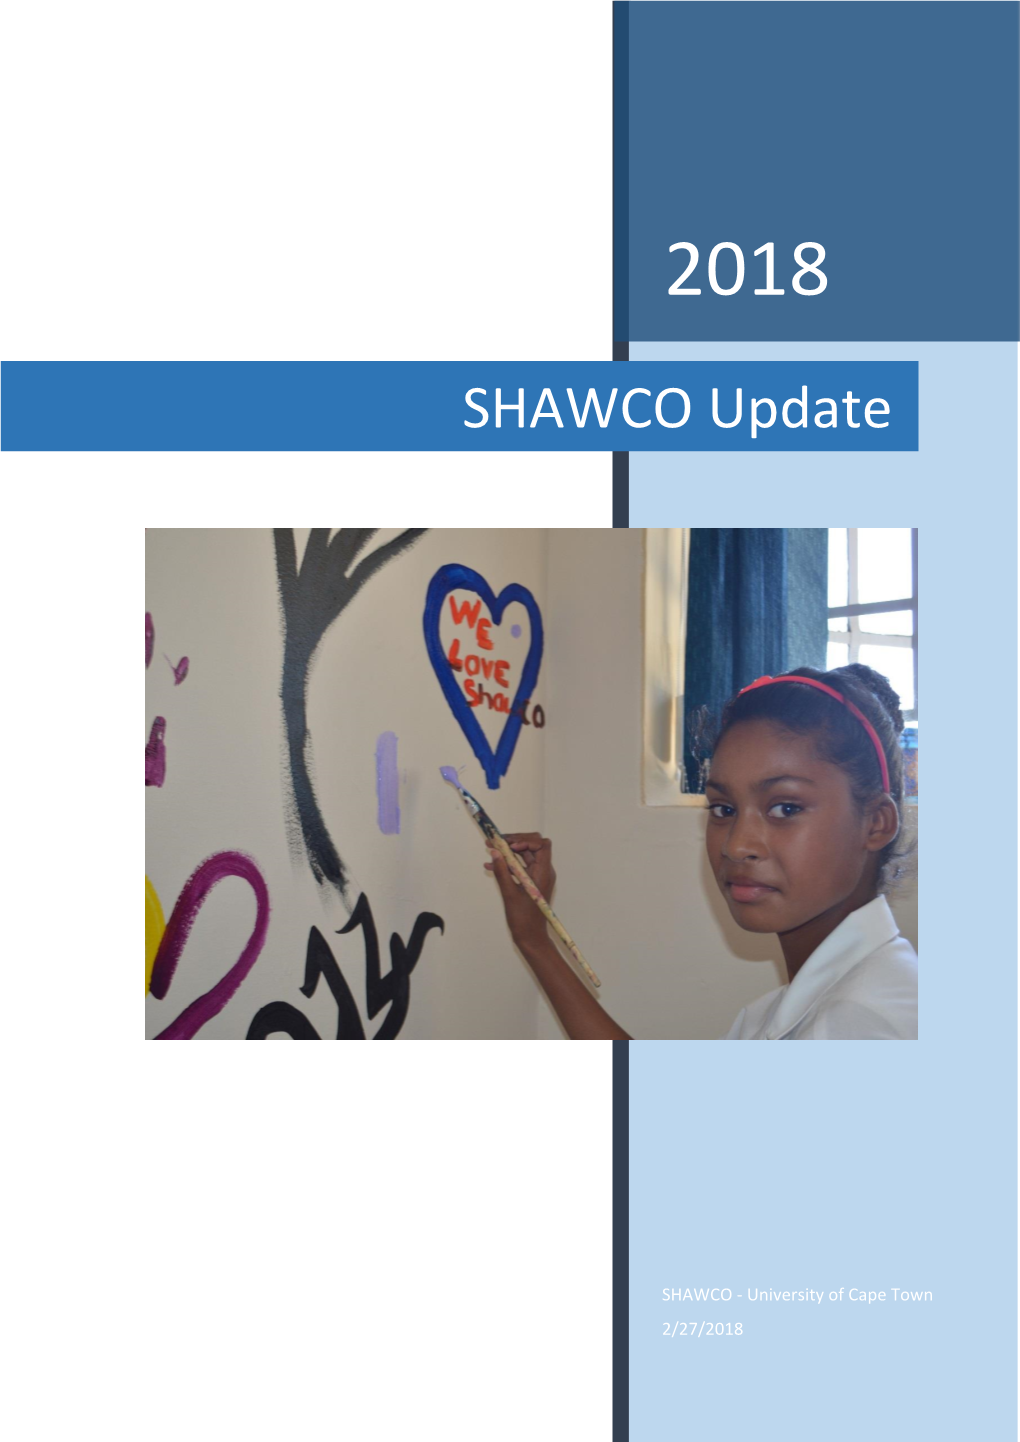 SHAWCO Update